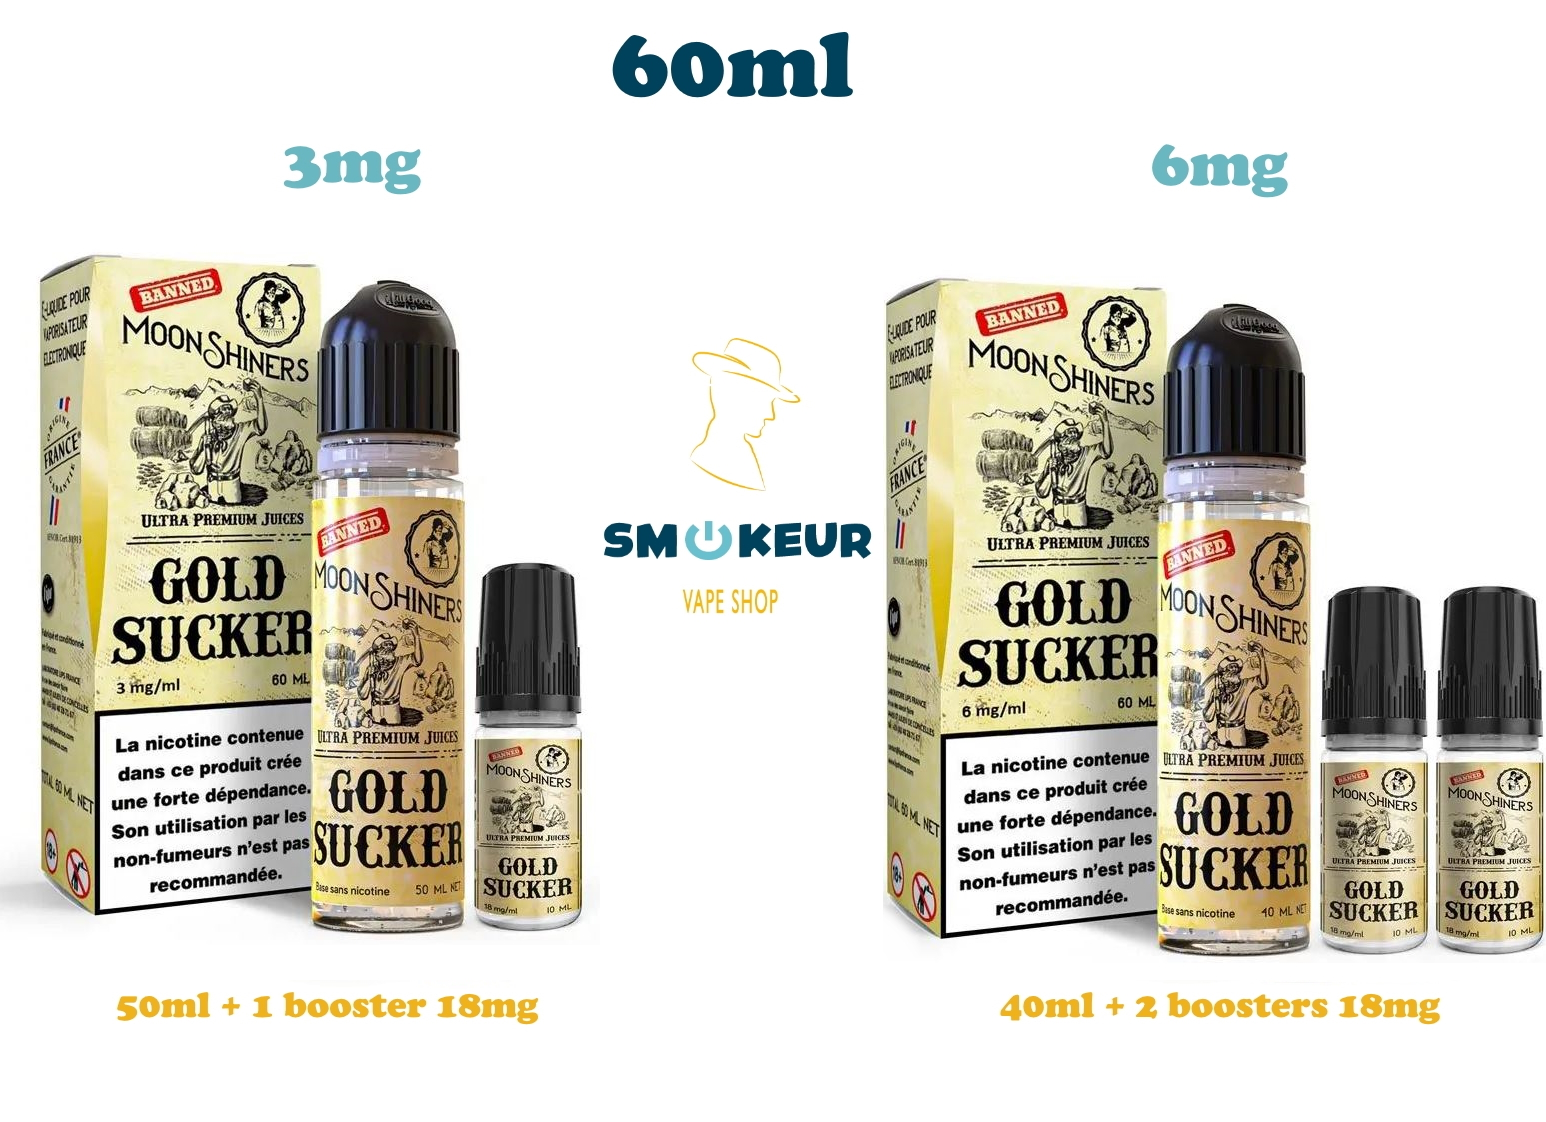 E-liquide Gold Sucker Moonshiners 60 ml, choix de dosage illustré